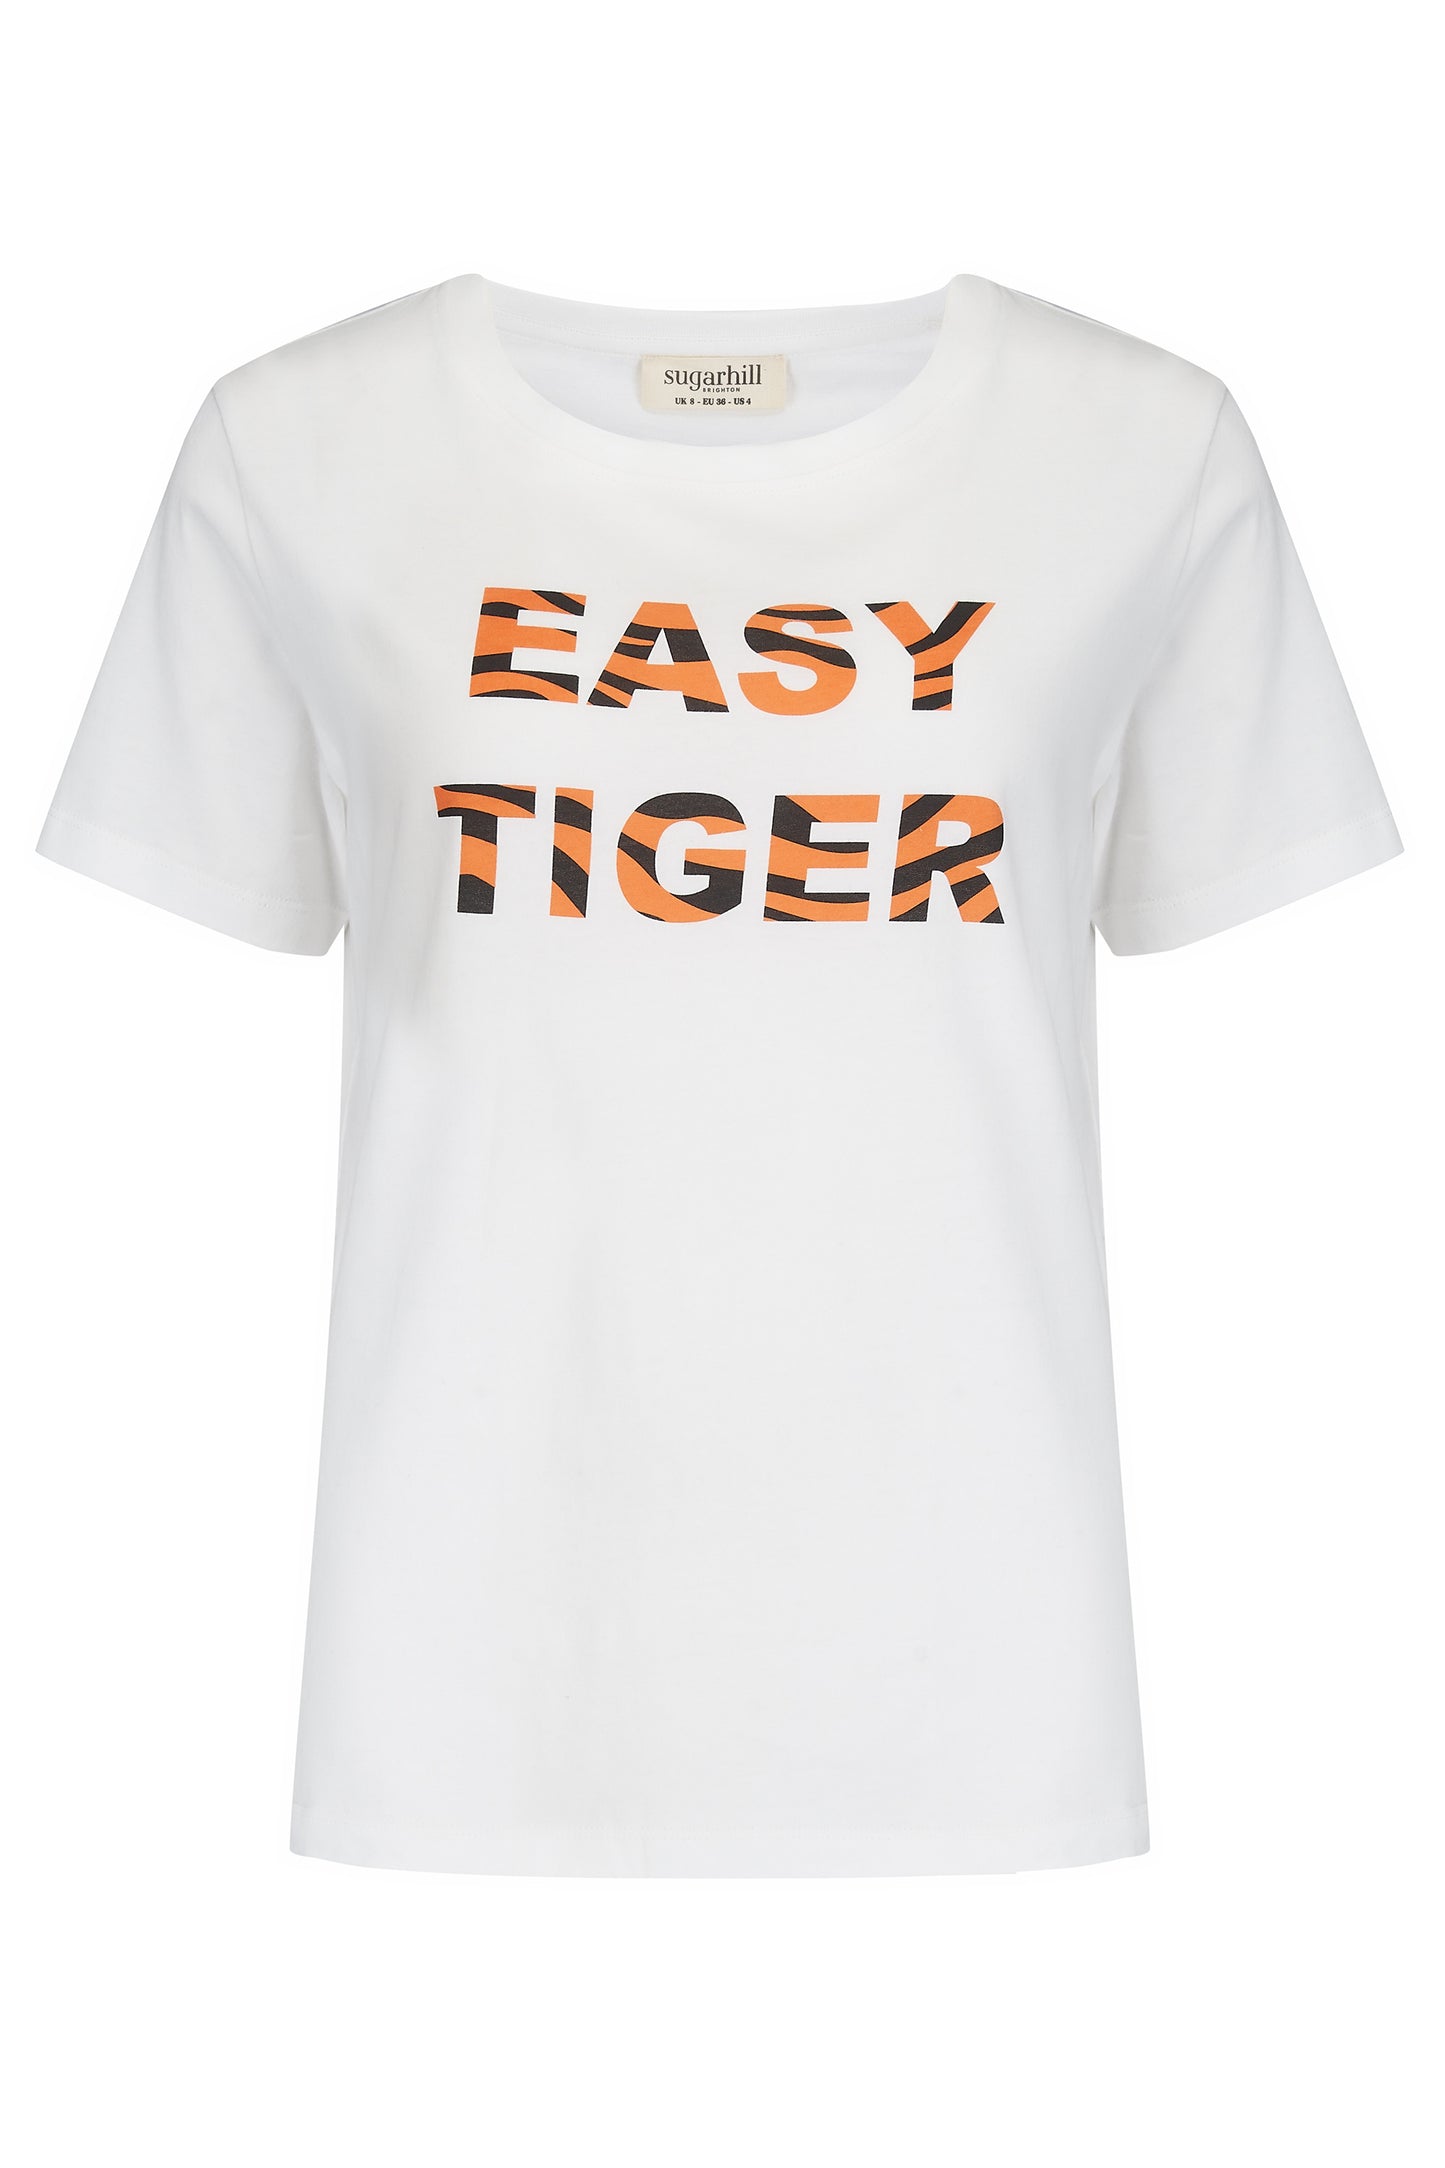 Maggie Easy Tiger Tshirt